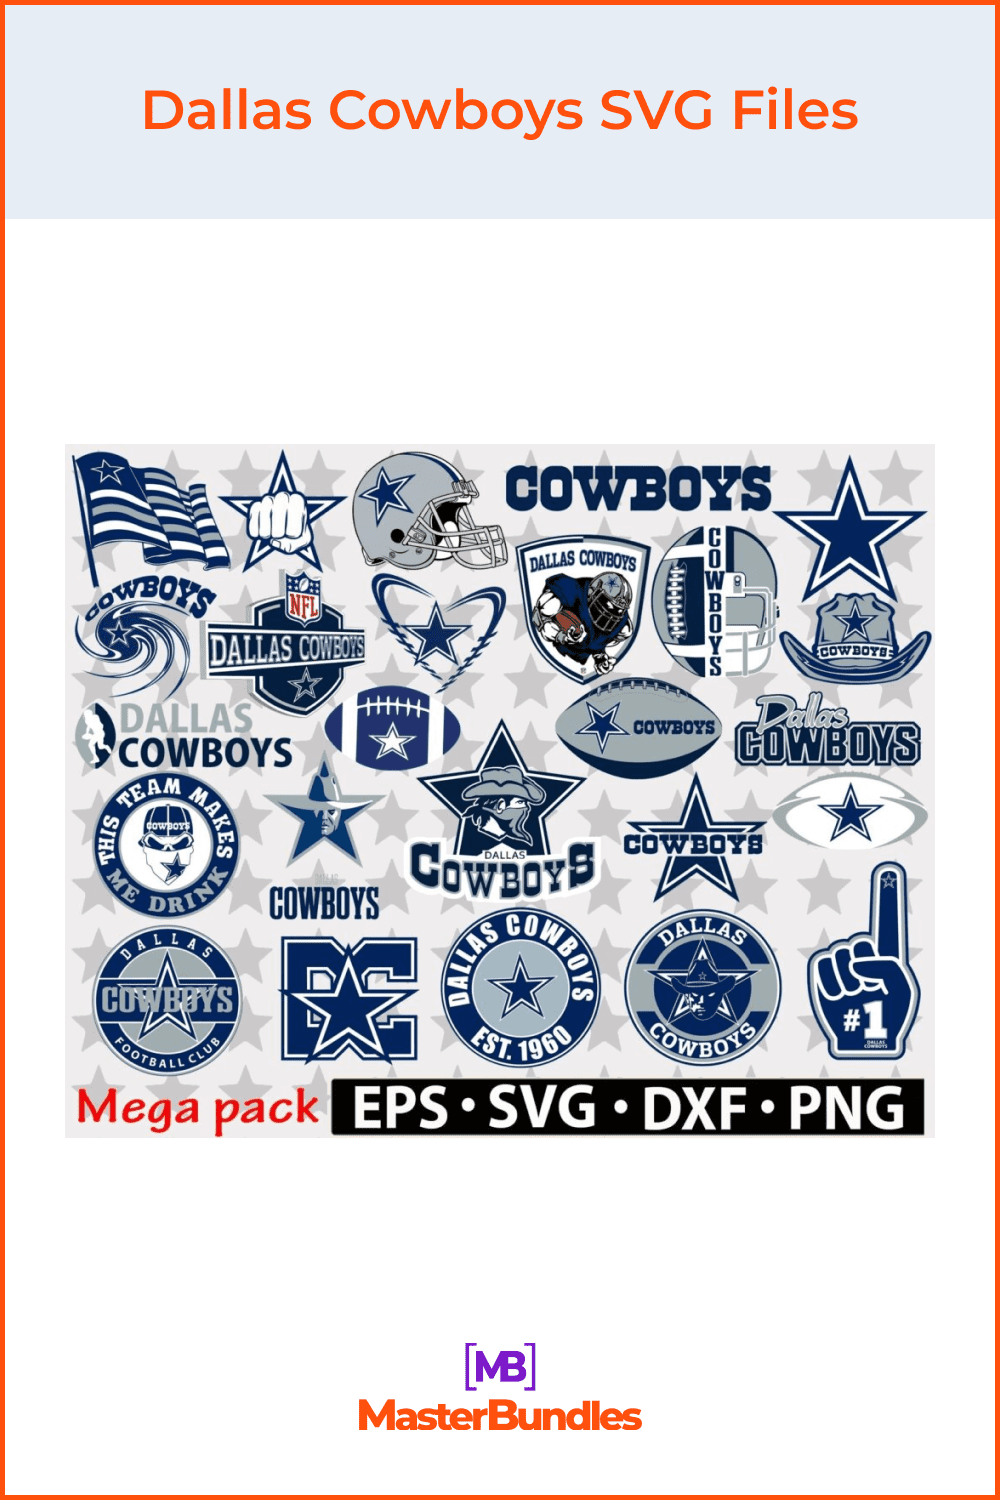 Dallas Cowboys SVG Files.